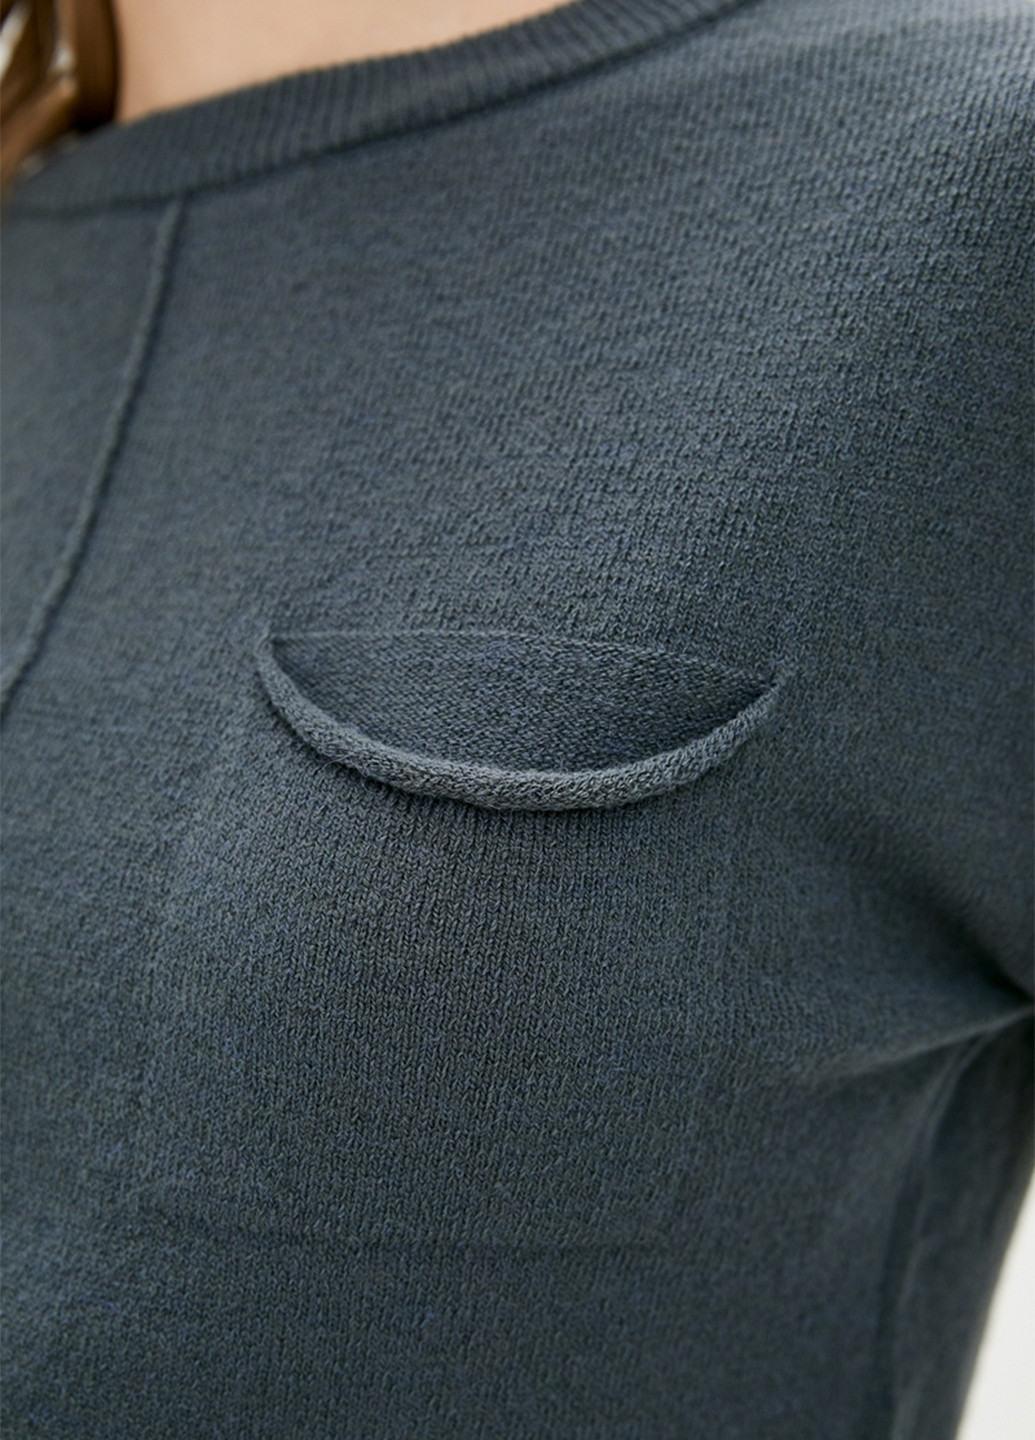 Костюм (джемпер, брюки) Sewel брючный однотонный тёмно-серый кэжуал шерсть, акрил